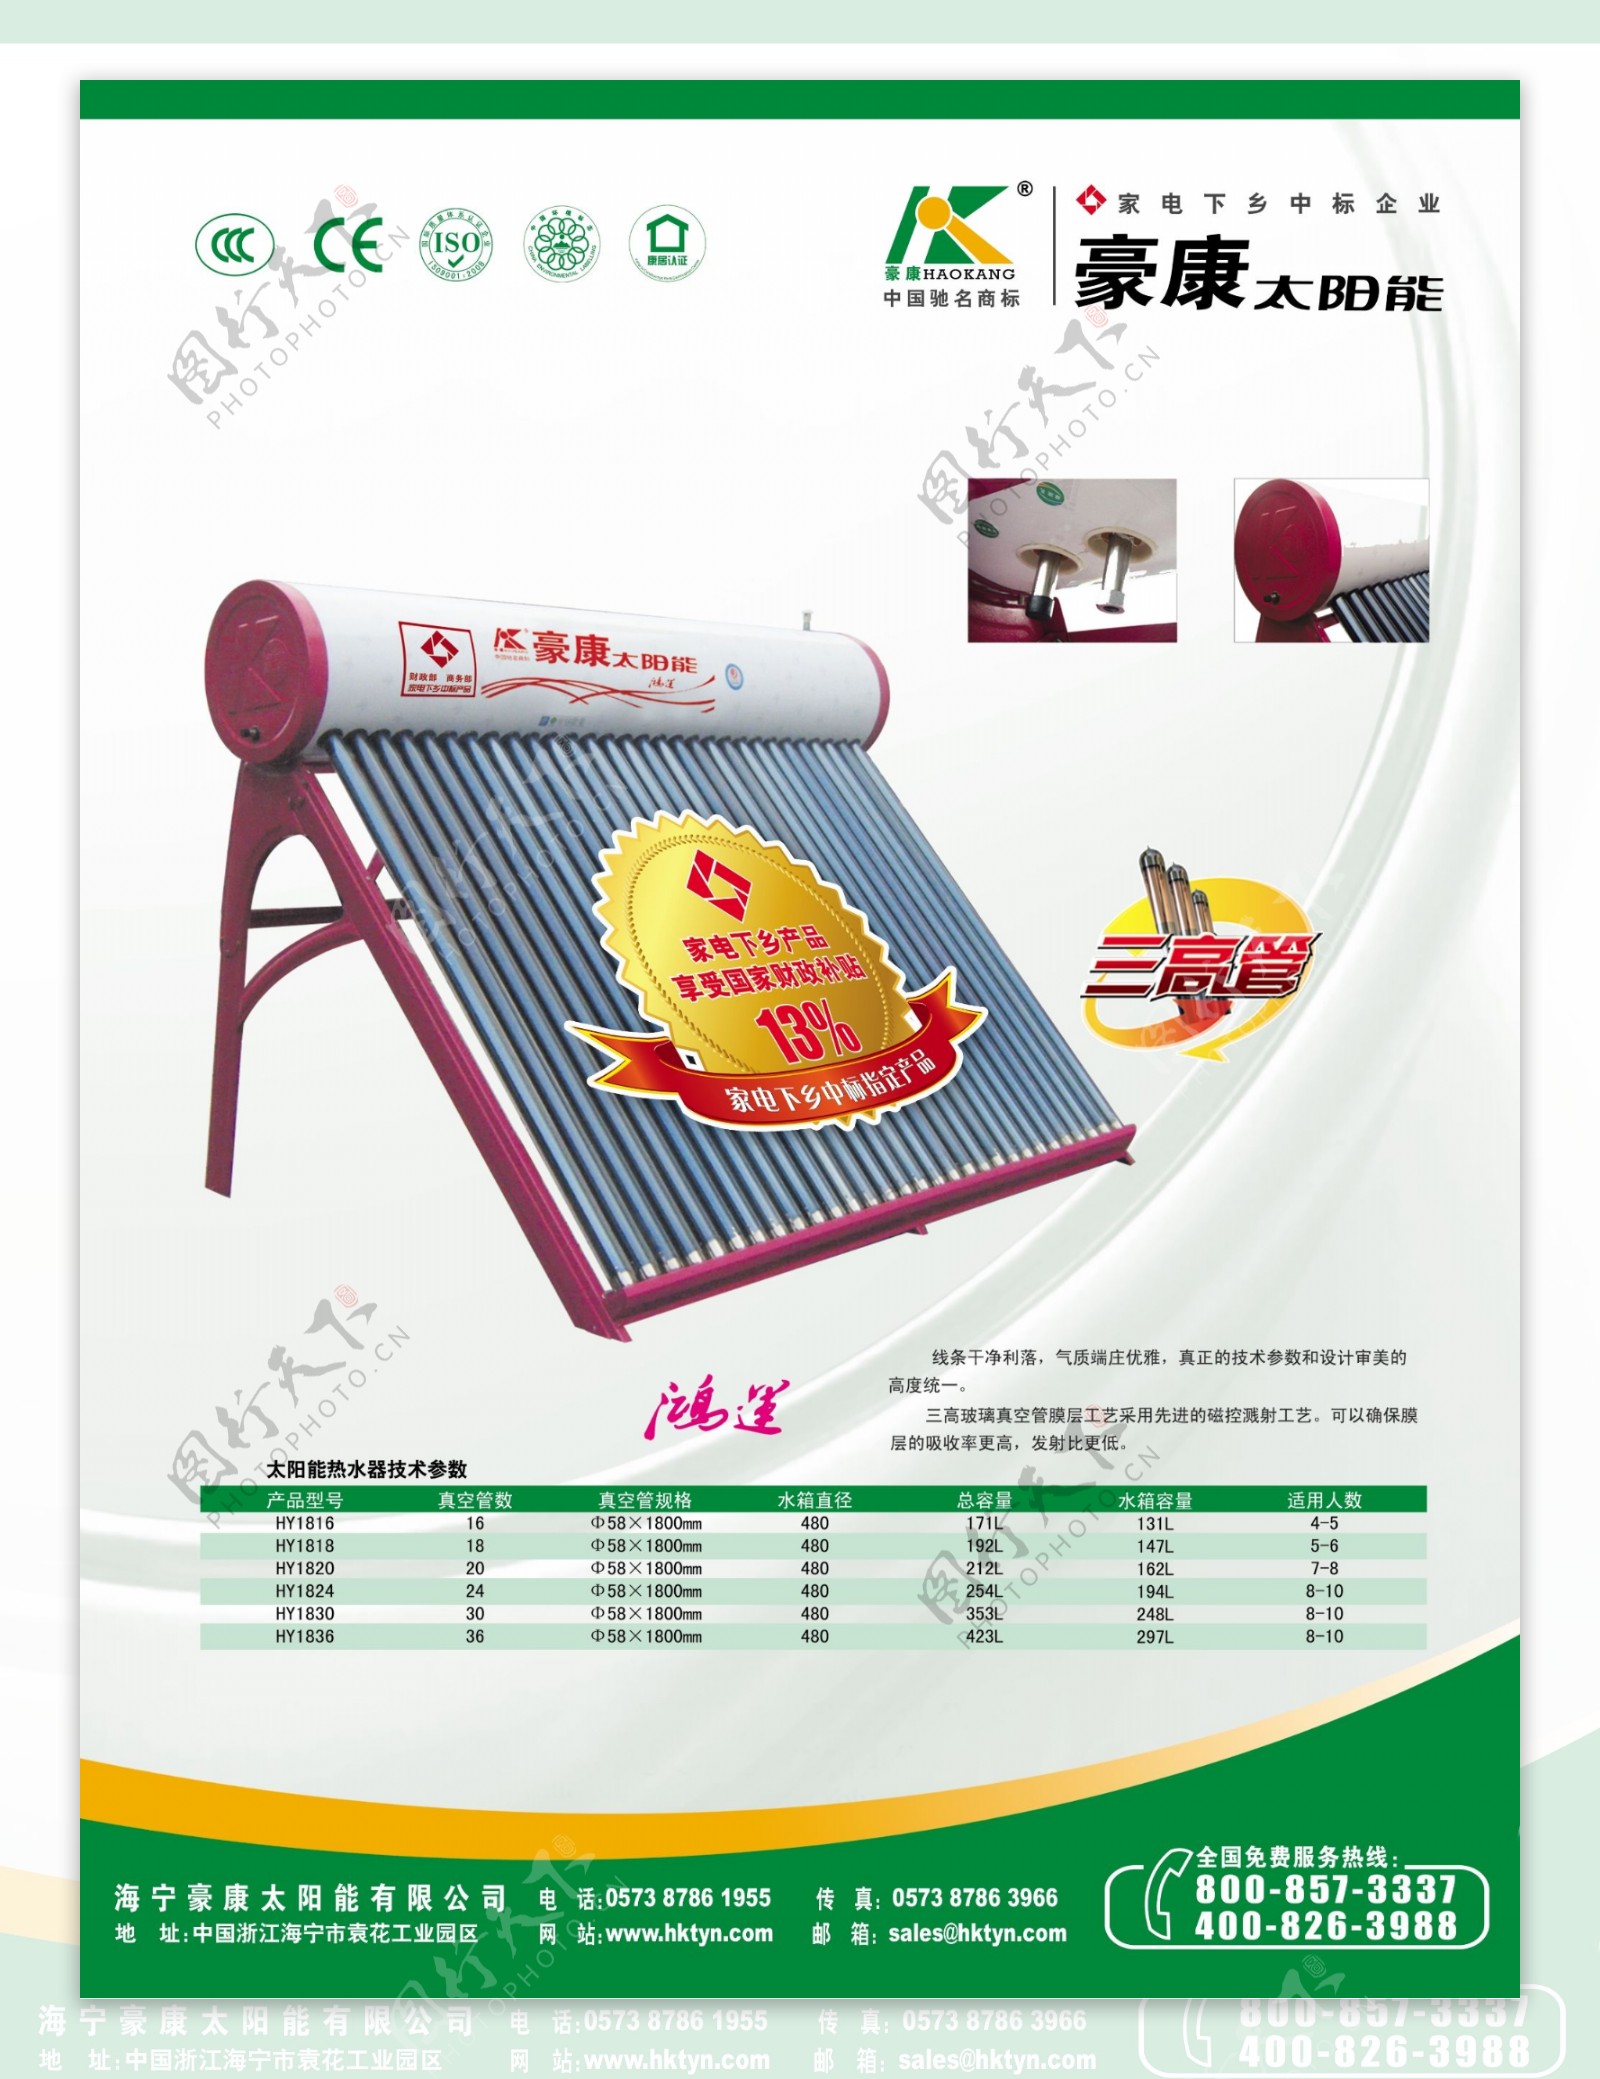 豪康太阳能热水器展板PSD素材